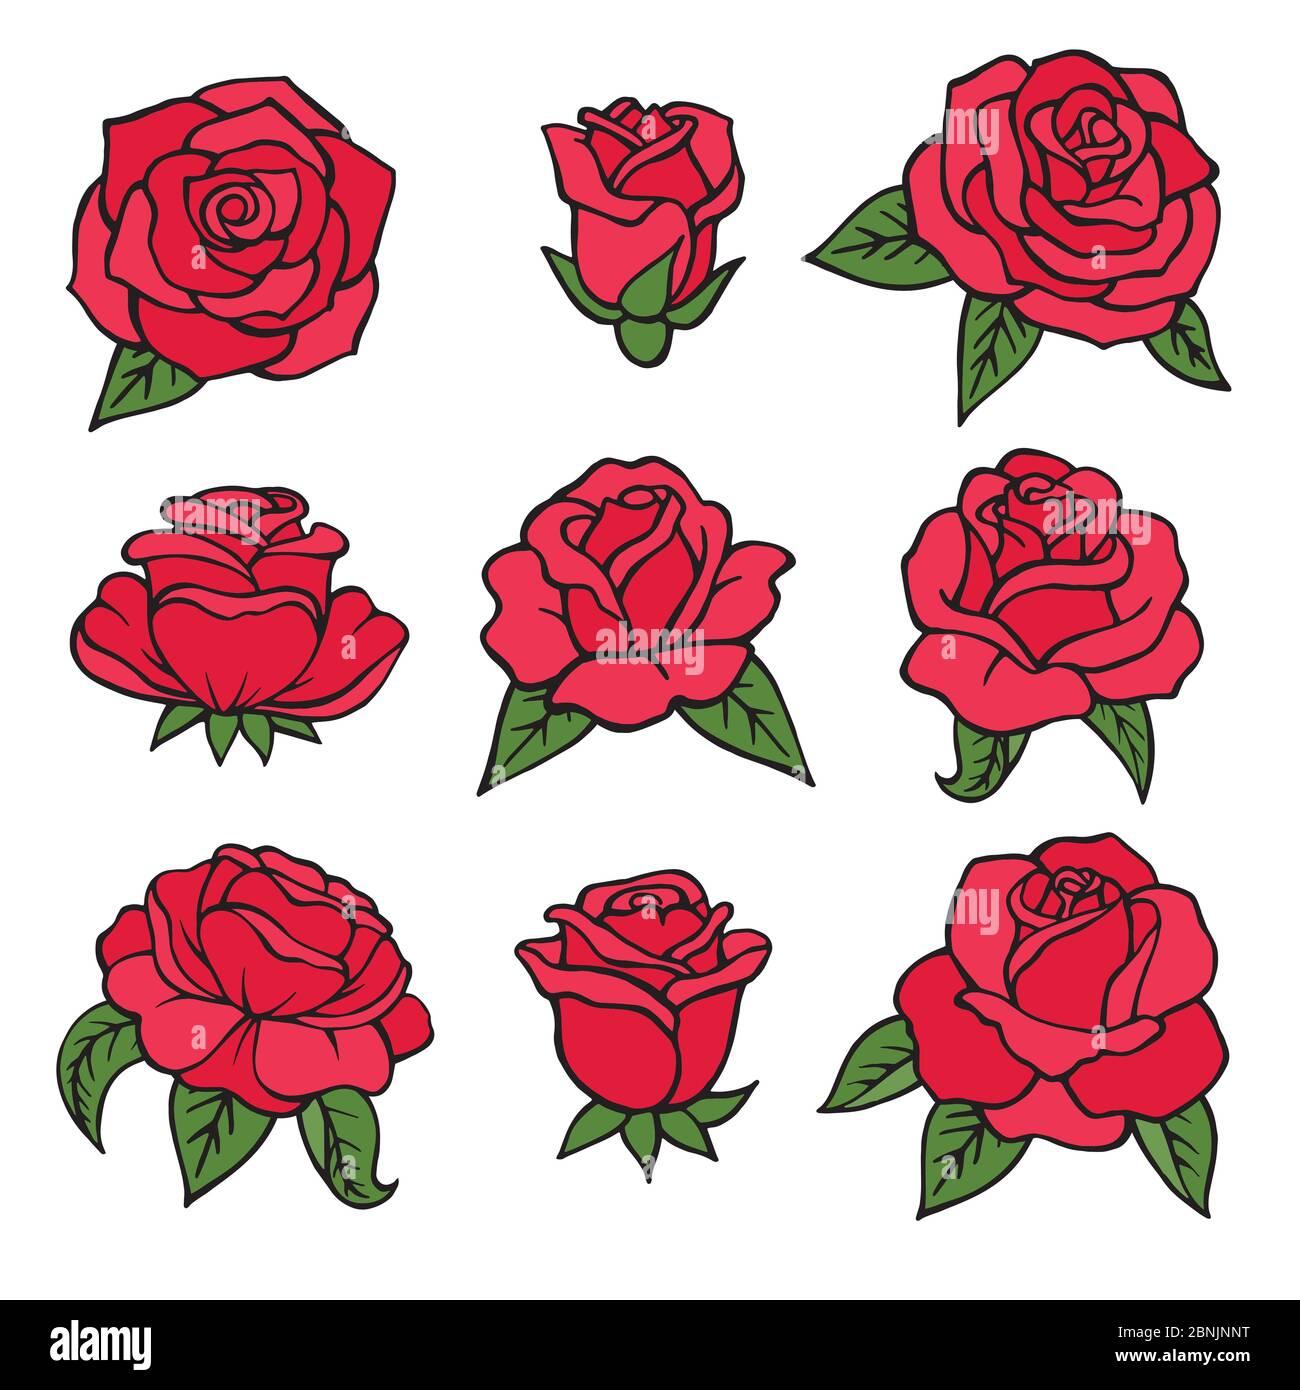 Illustrationen von Pflanzen. Rote Rosen Symbole der Liebe. Hochzeitsblumen isolieren auf weiß Stock Vektor